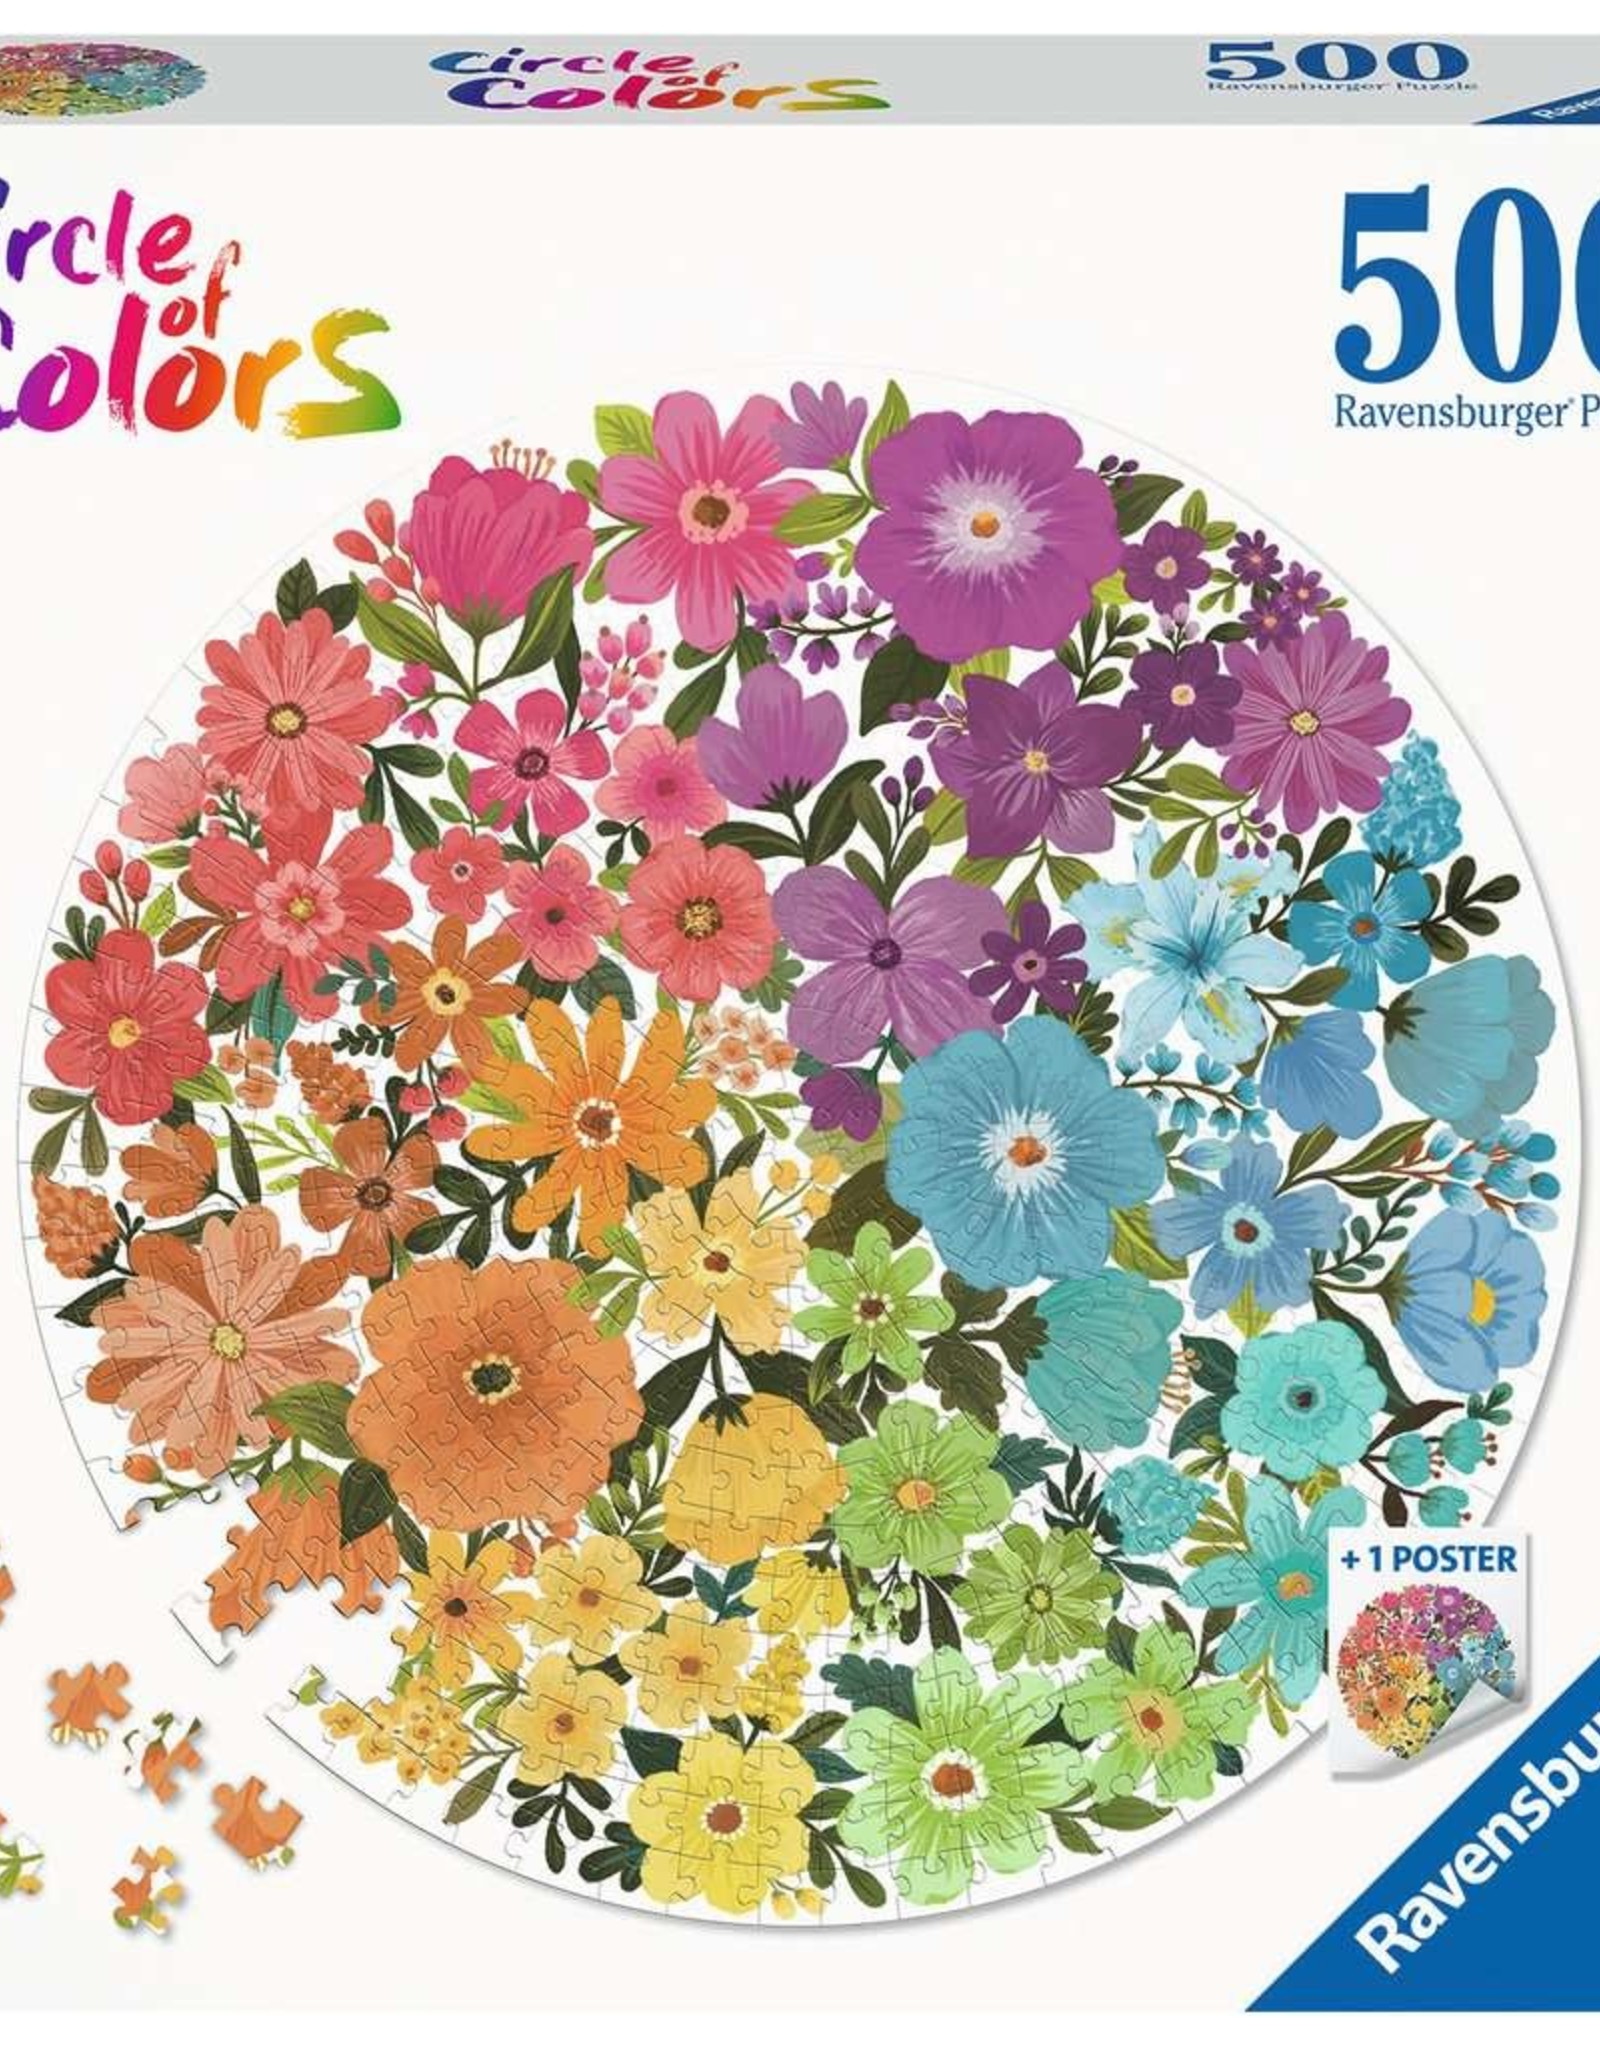 Ravensburger 500pc Flowers Puzzle